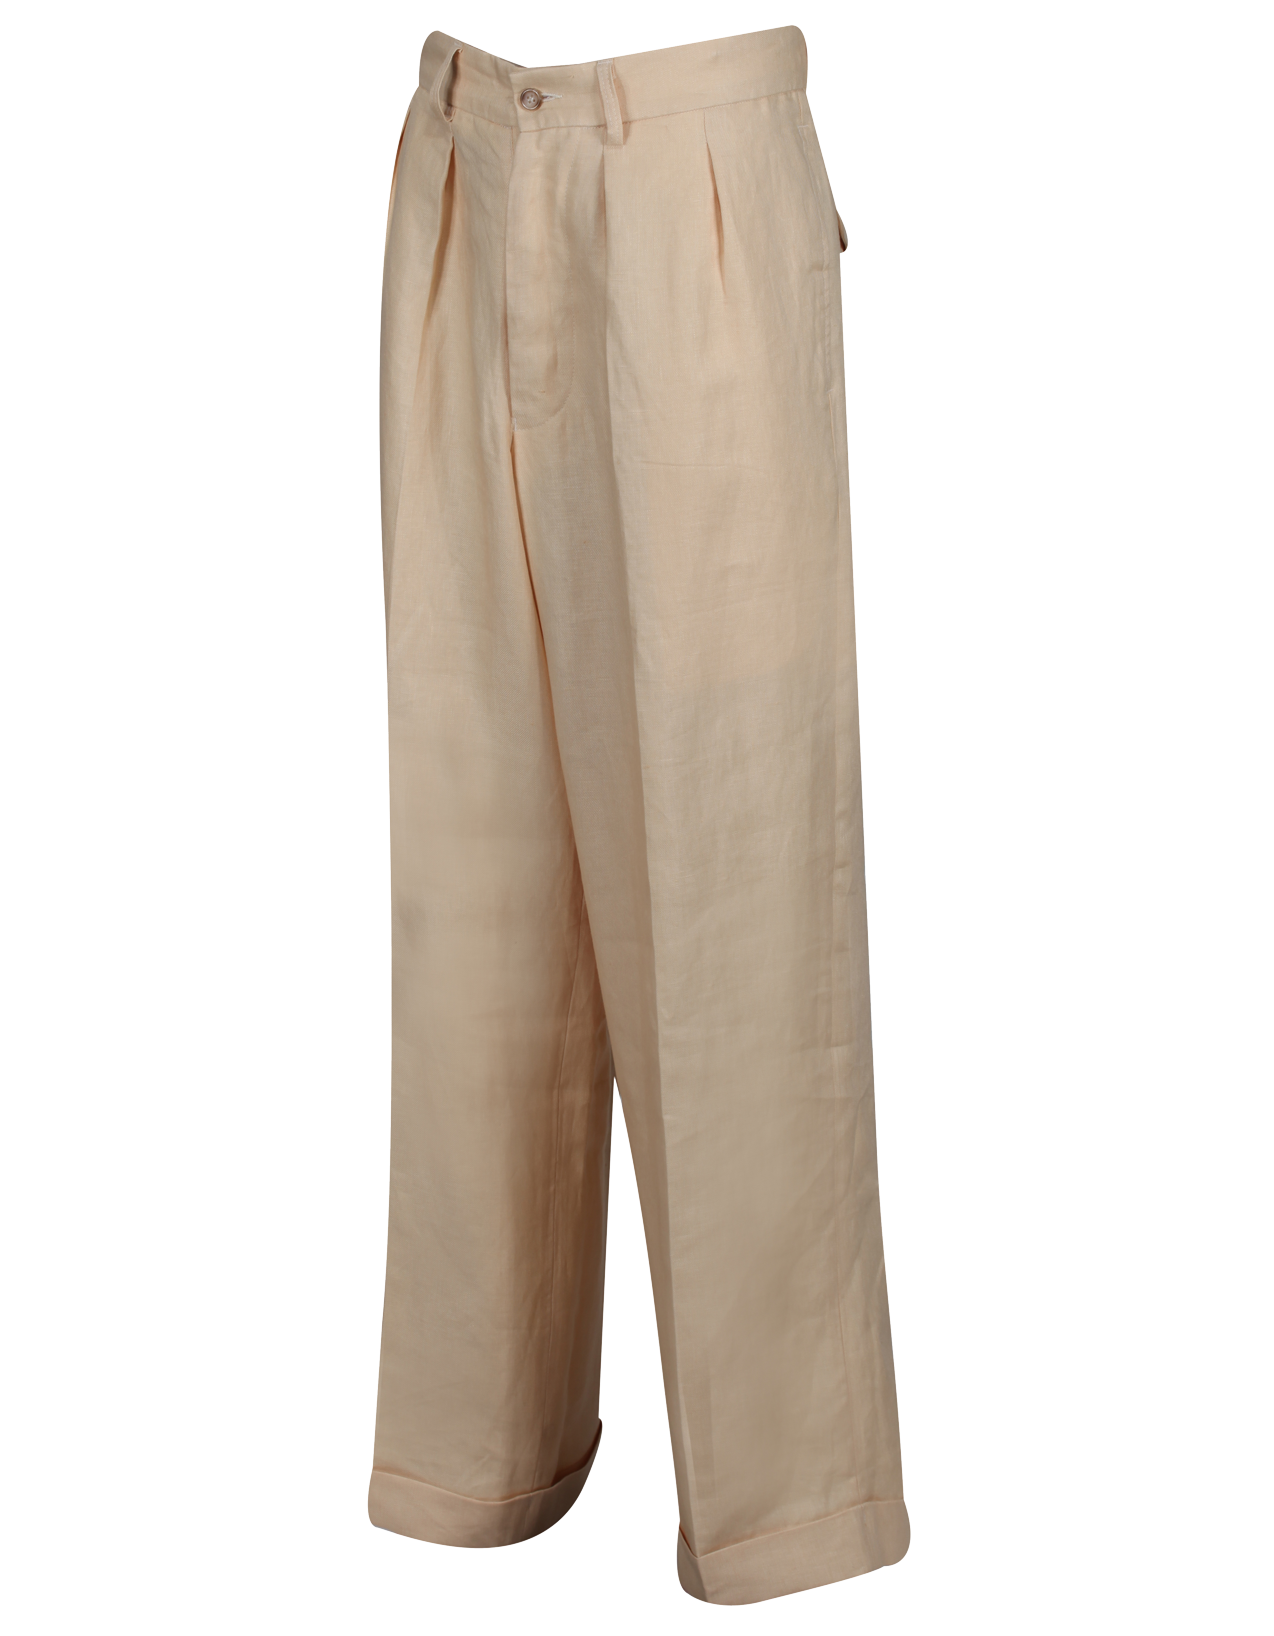 1930s High waisted summer trouser